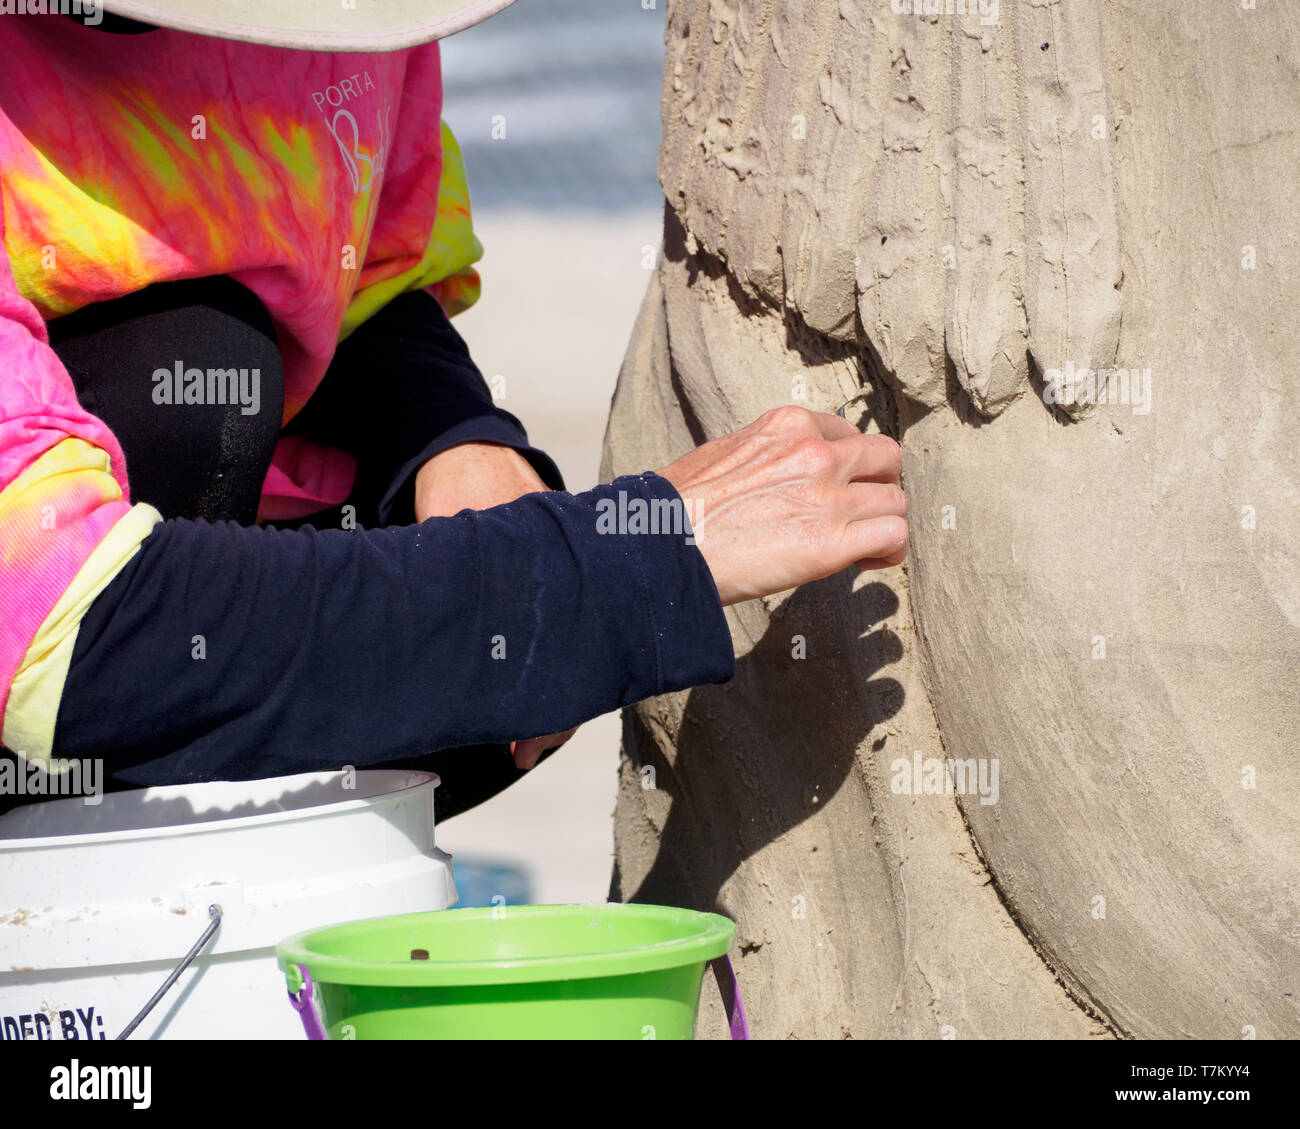 La main de Remy Hoggard sculpte des détails sur sa 3ème Place & People's Choice award winning sculpture 'Sofia' Sandfest, Texas, 2019 Port Aransas, Texas USA. Banque D'Images